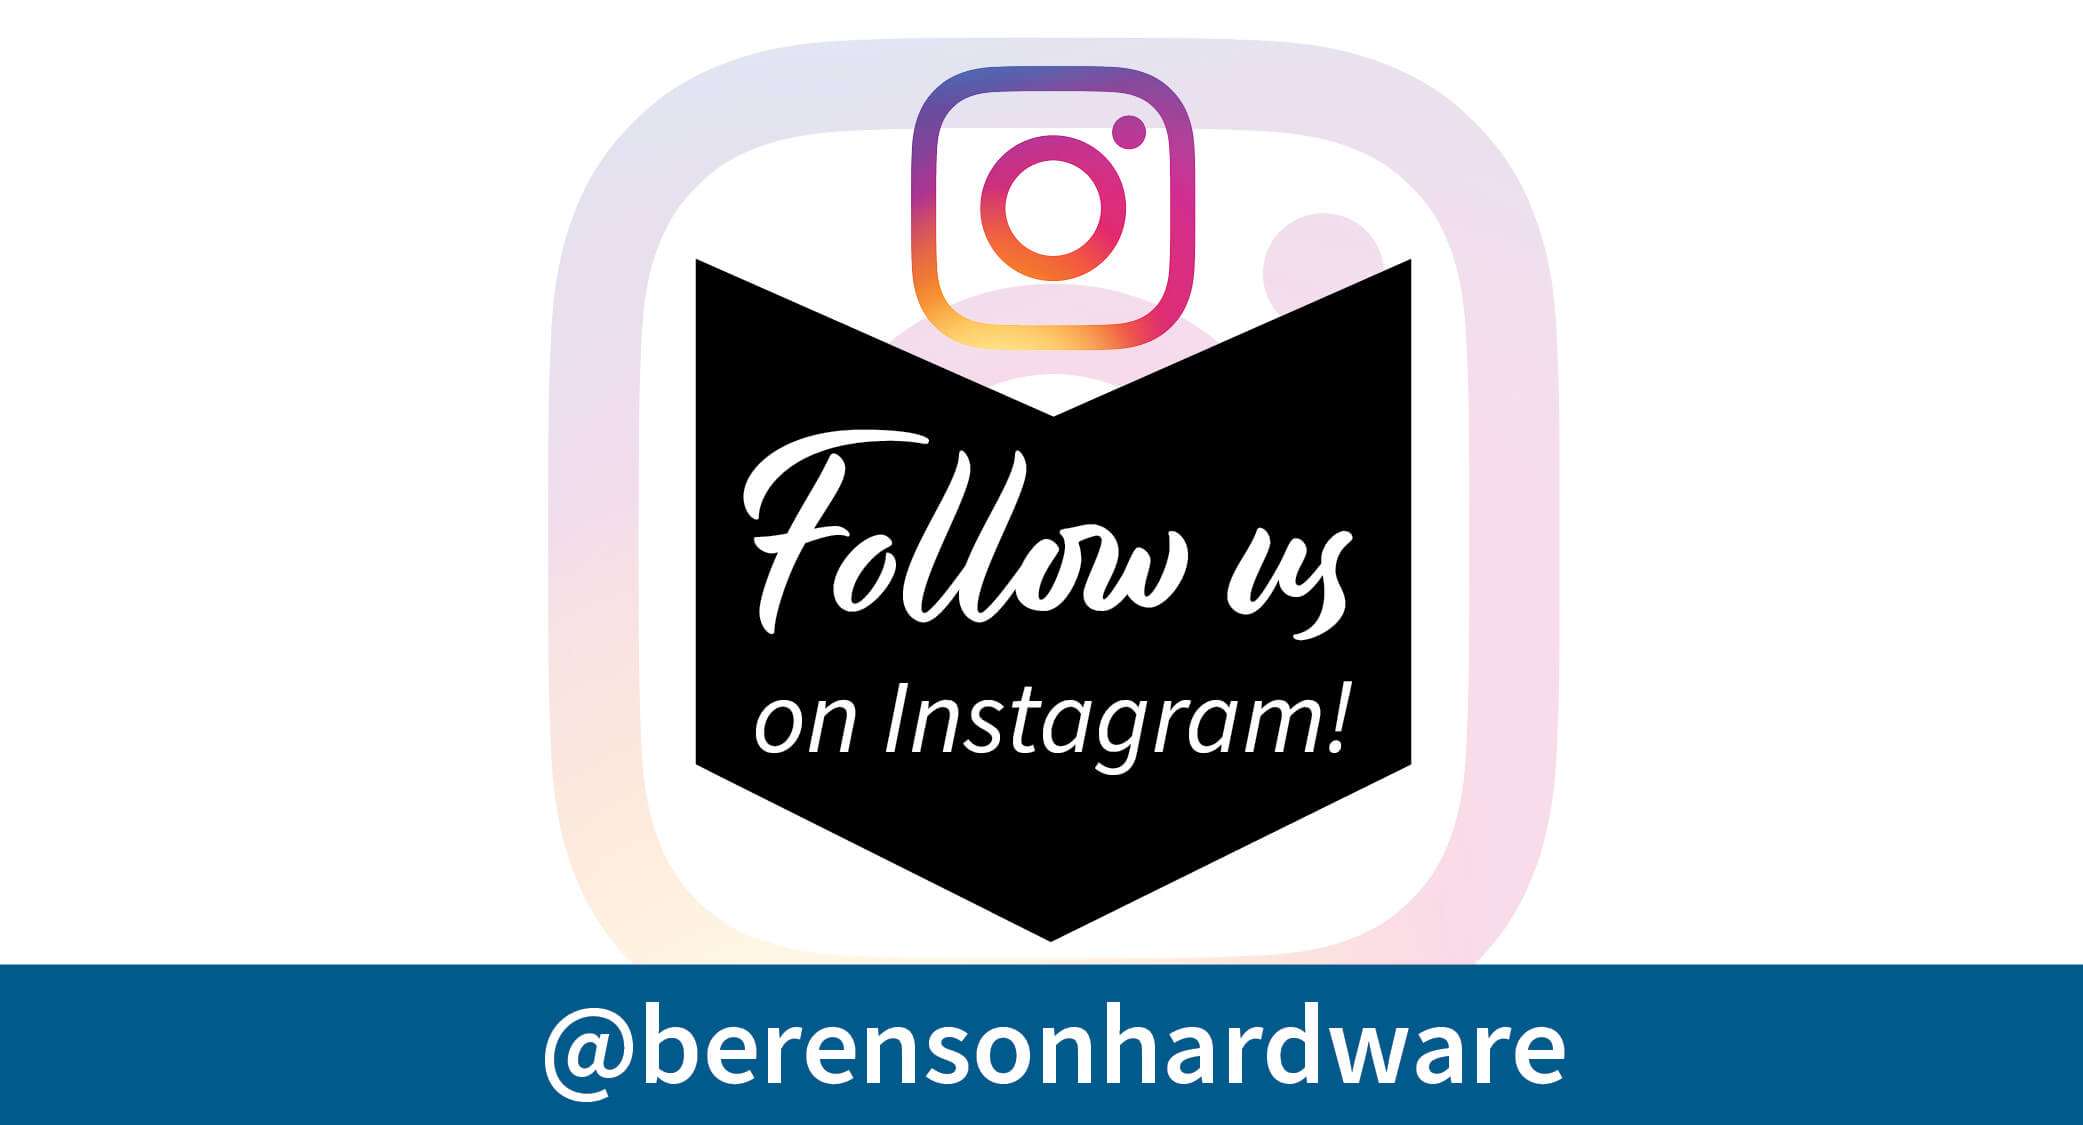 Berenson Hardware on Instagram